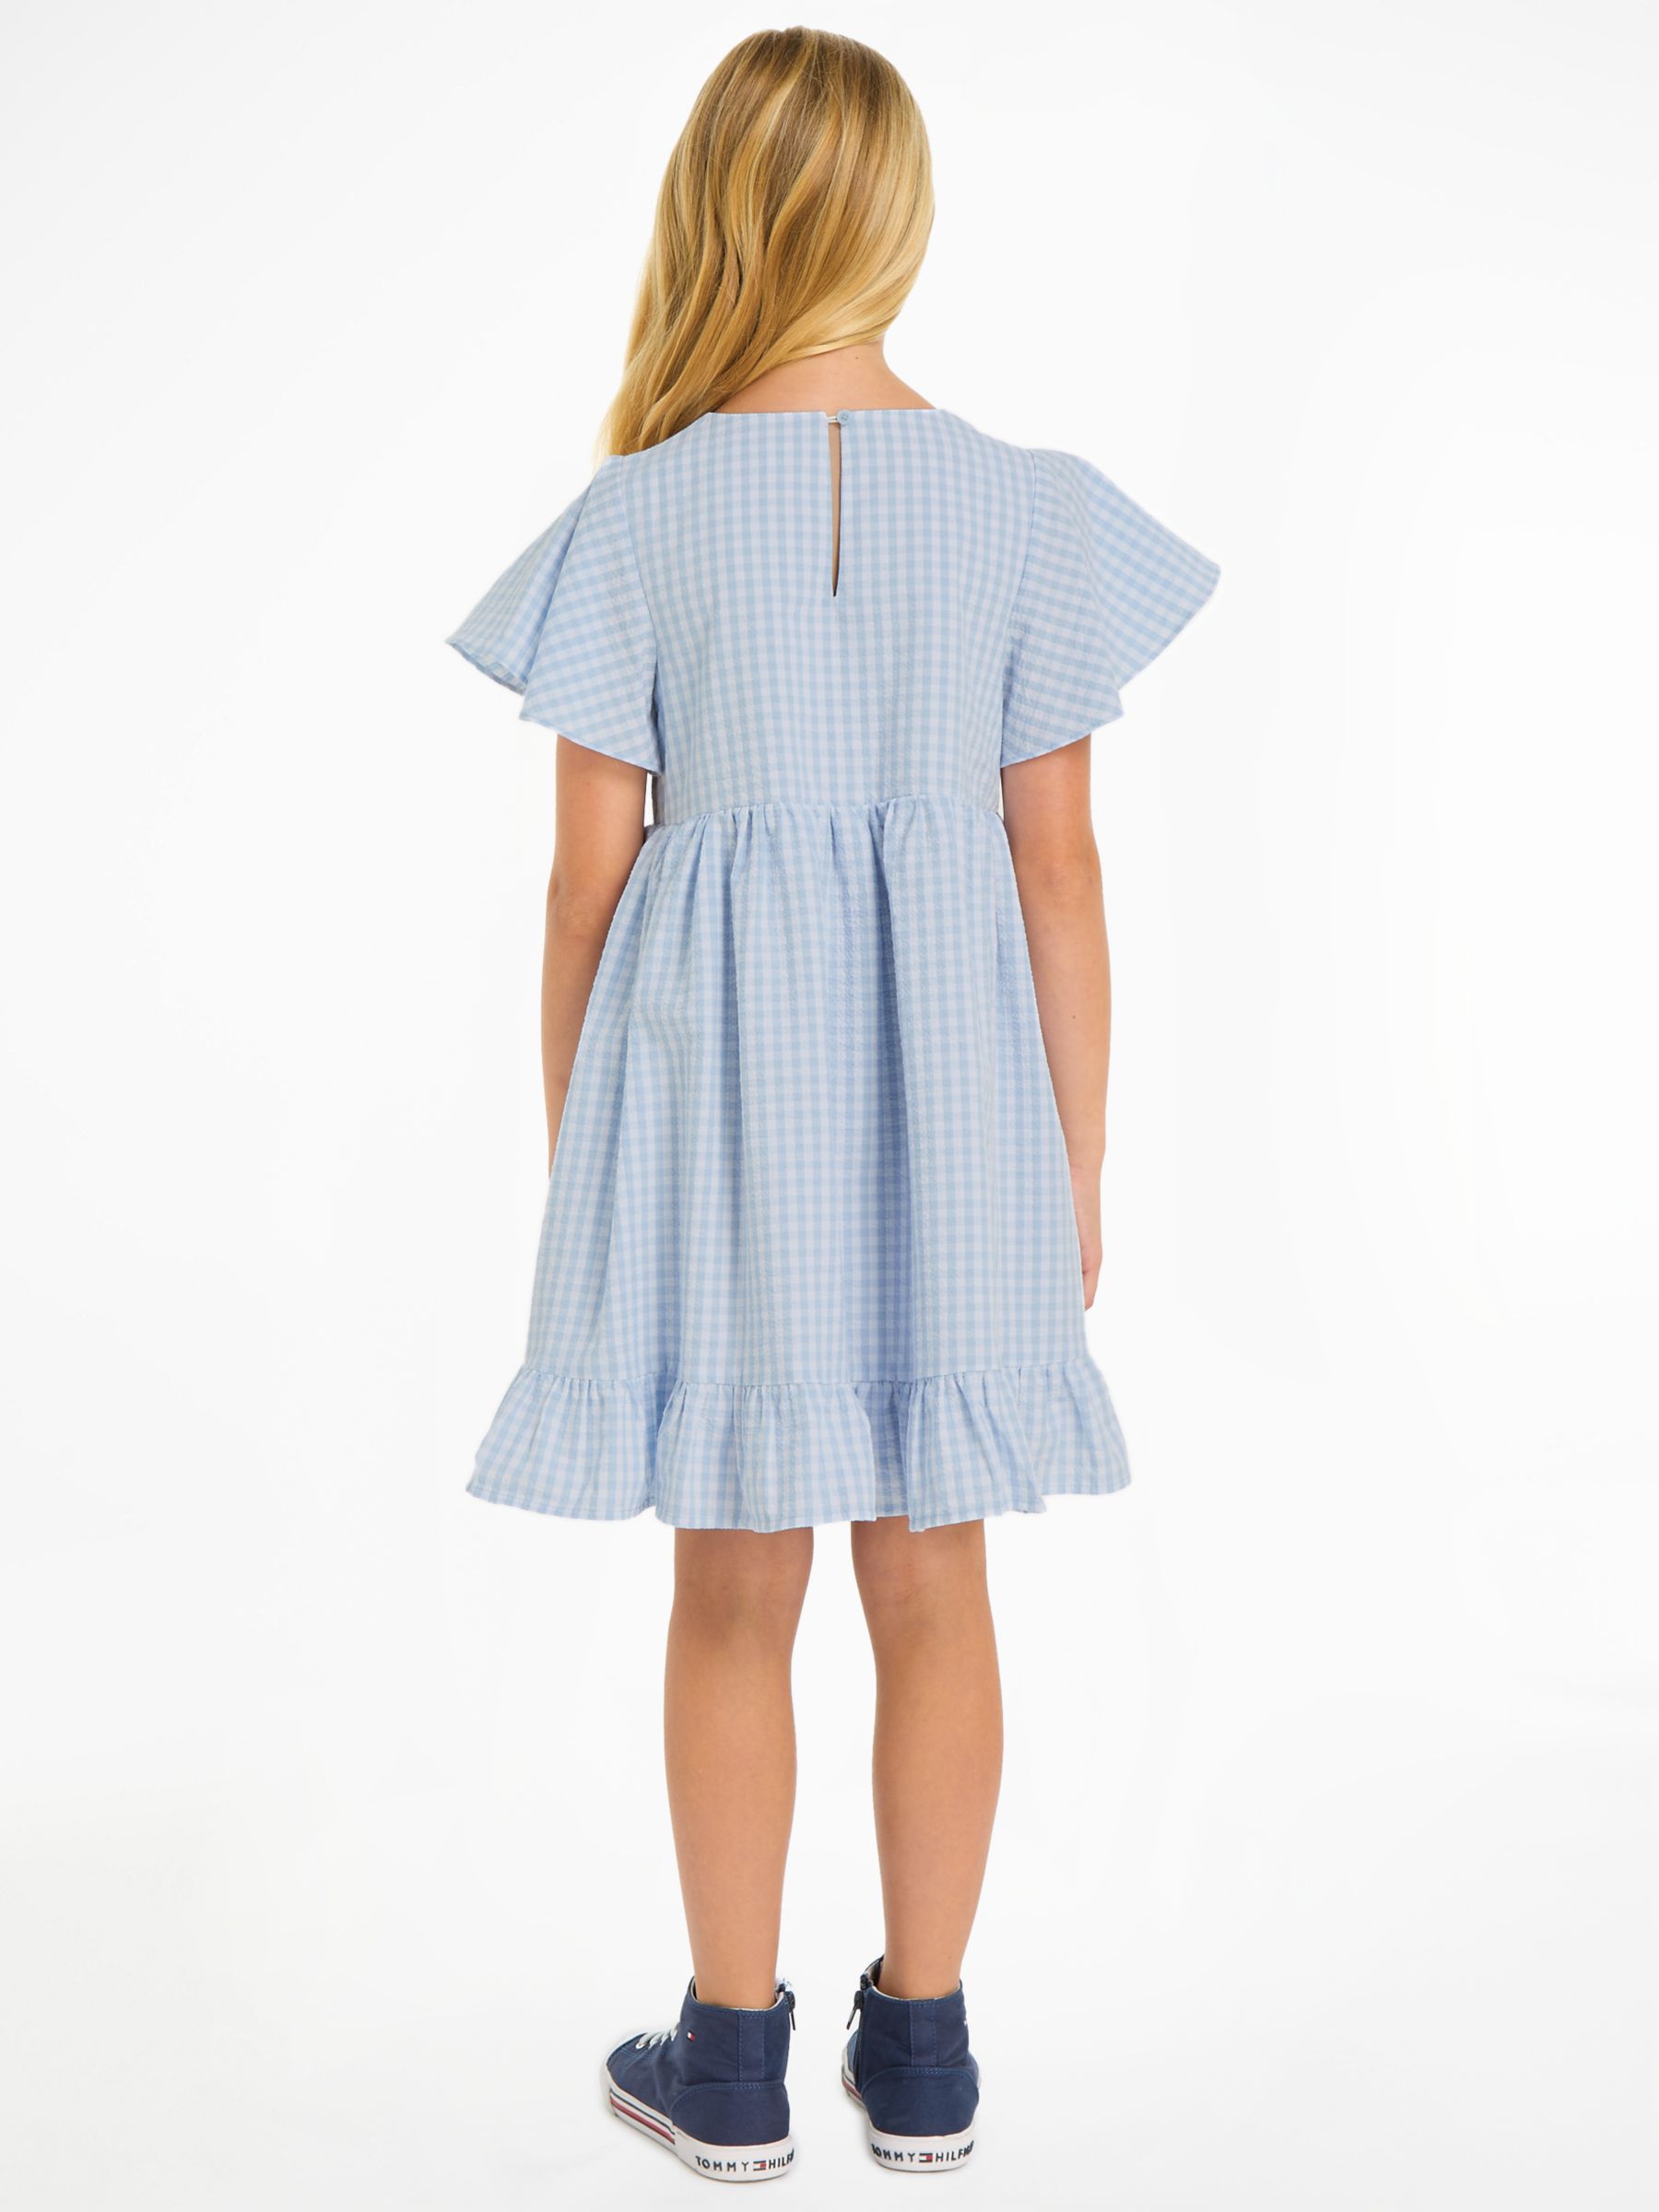 Buy Tommy Hilfiger Kids' Flag Gingham Flare Dress, Breezy Blue Check Online at johnlewis.com